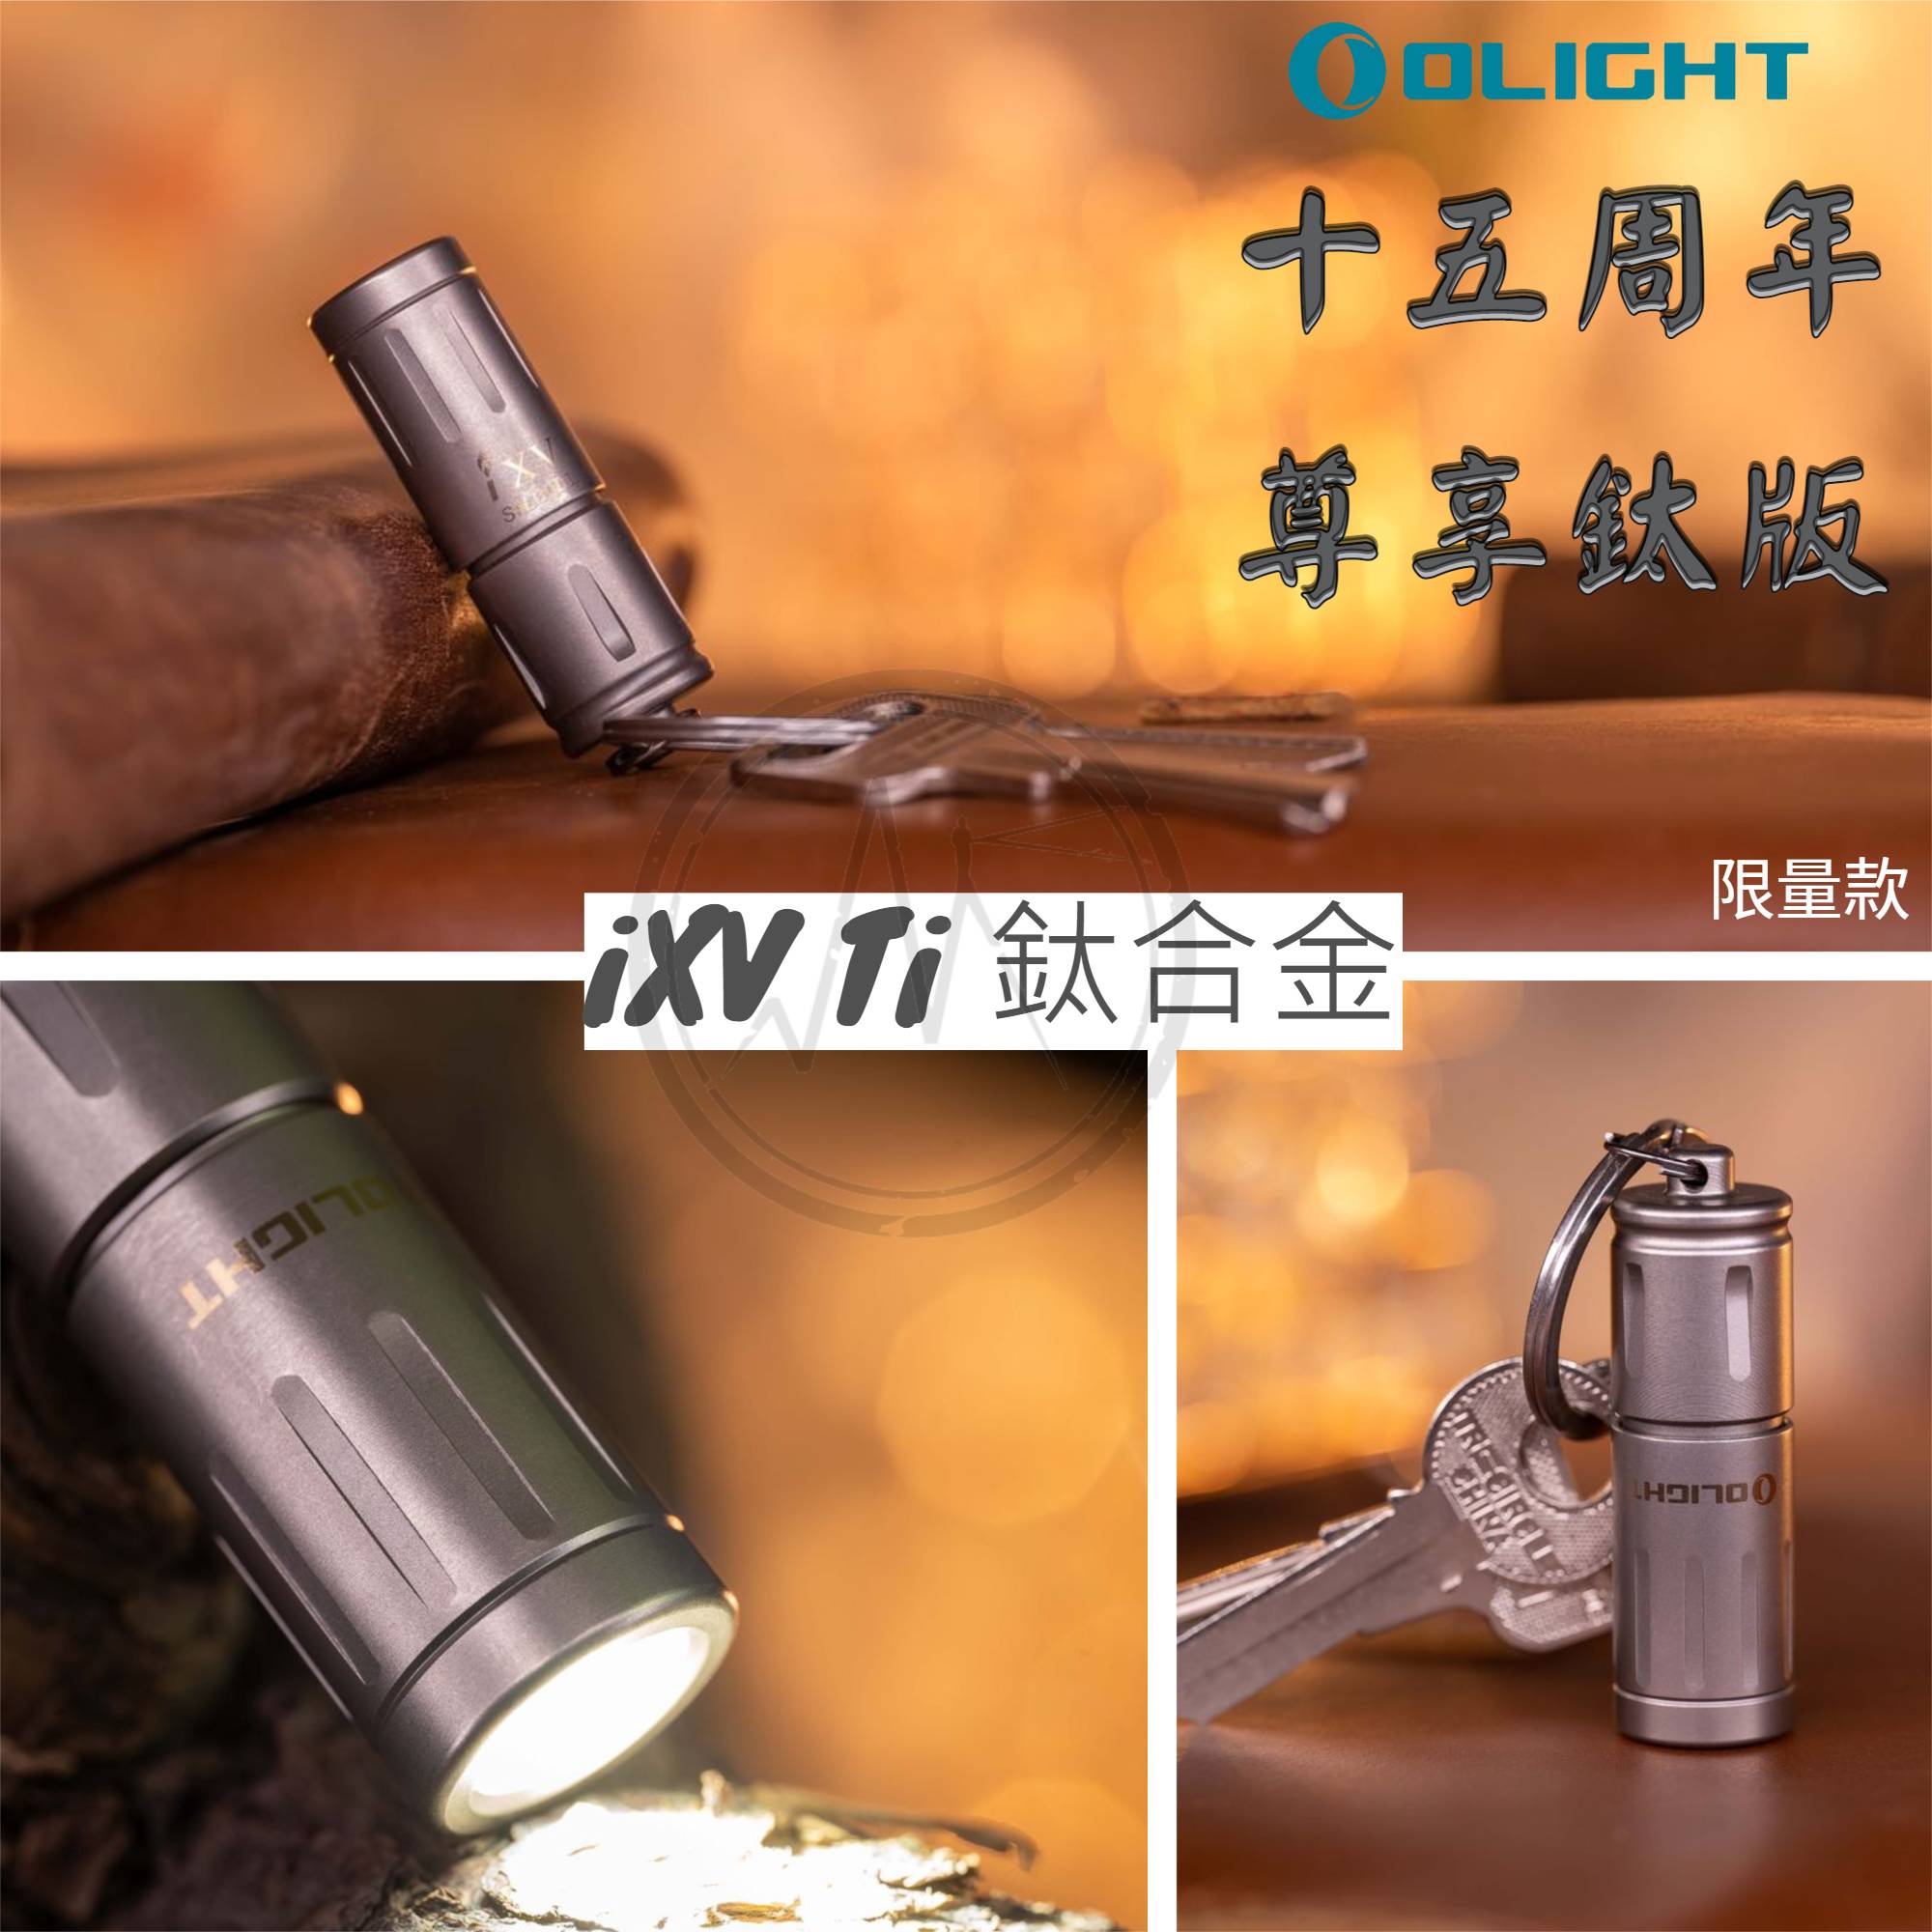 【售罄】Olight iXV Ti 180流明 15周年紀念鑰匙扣燈 旋轉調光 USB-C 高亮度隨身燈 限量紀念版